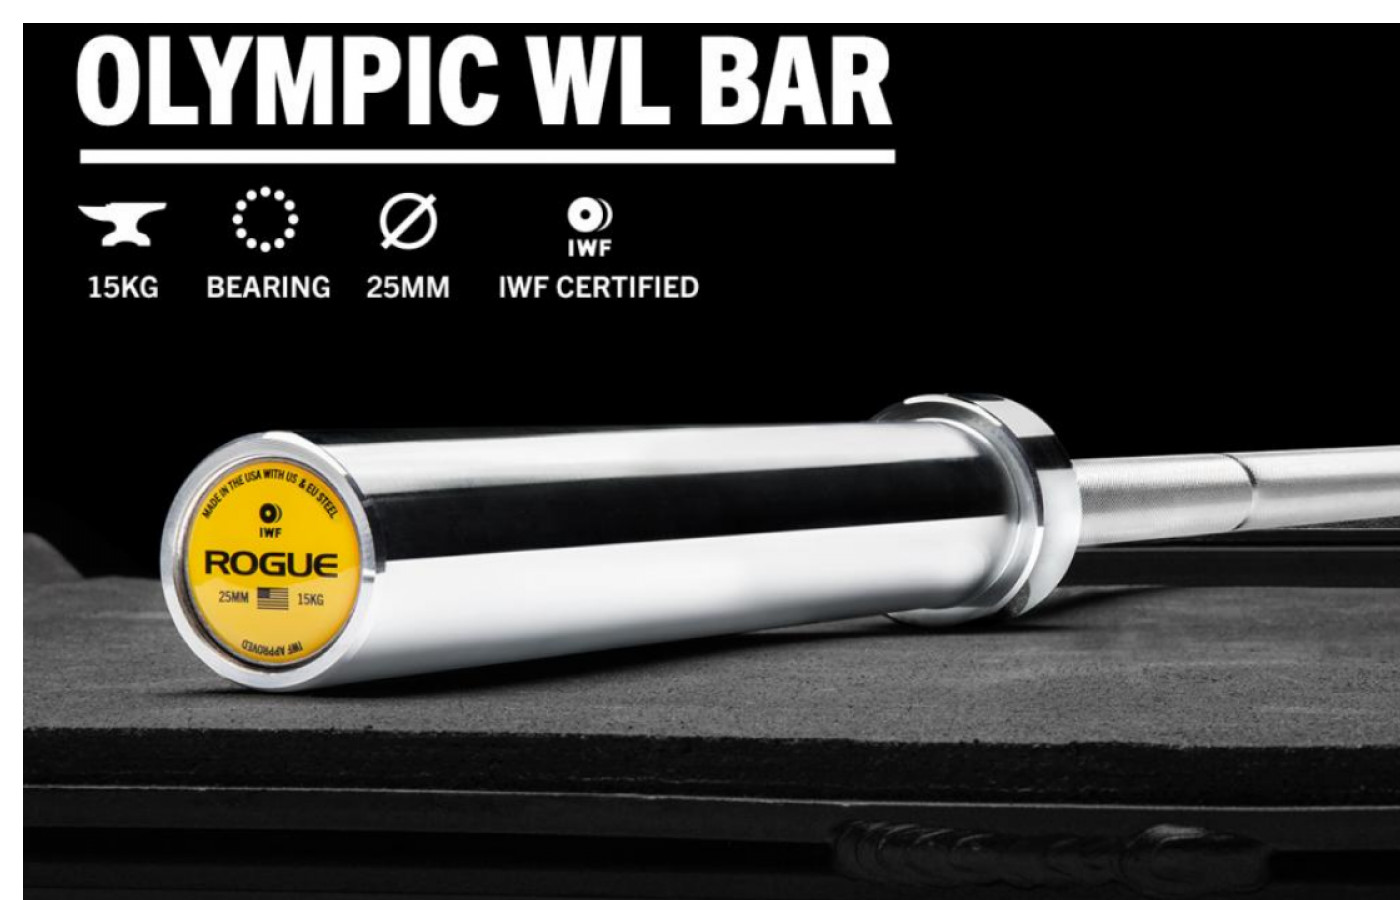 Rogue 25MM IWF Olympic Weightlifting Bar